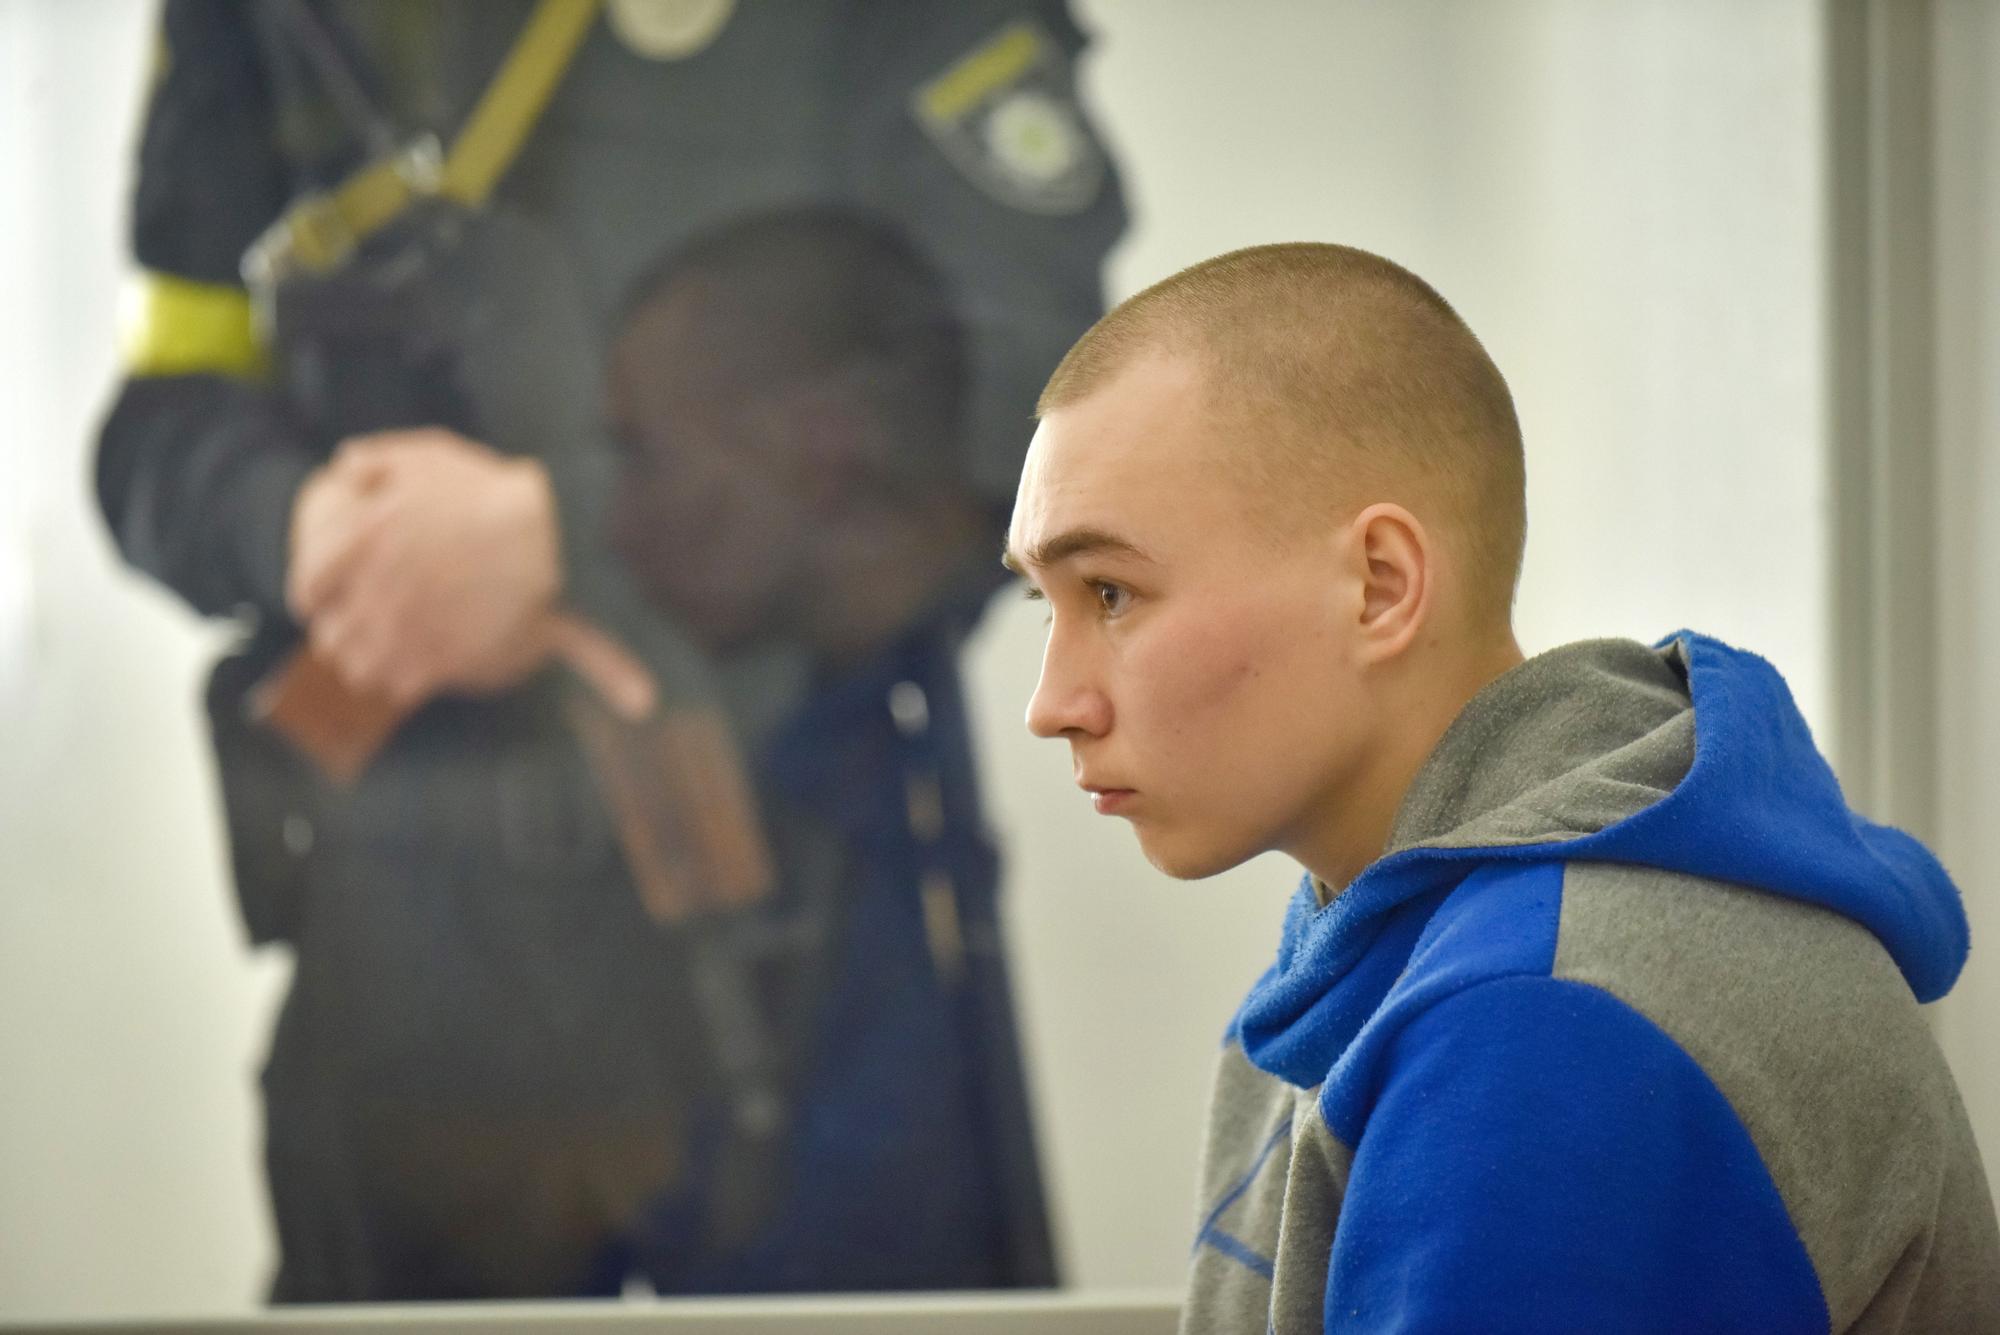 Piden cadena perpetua para un soldado ruso en ucrania